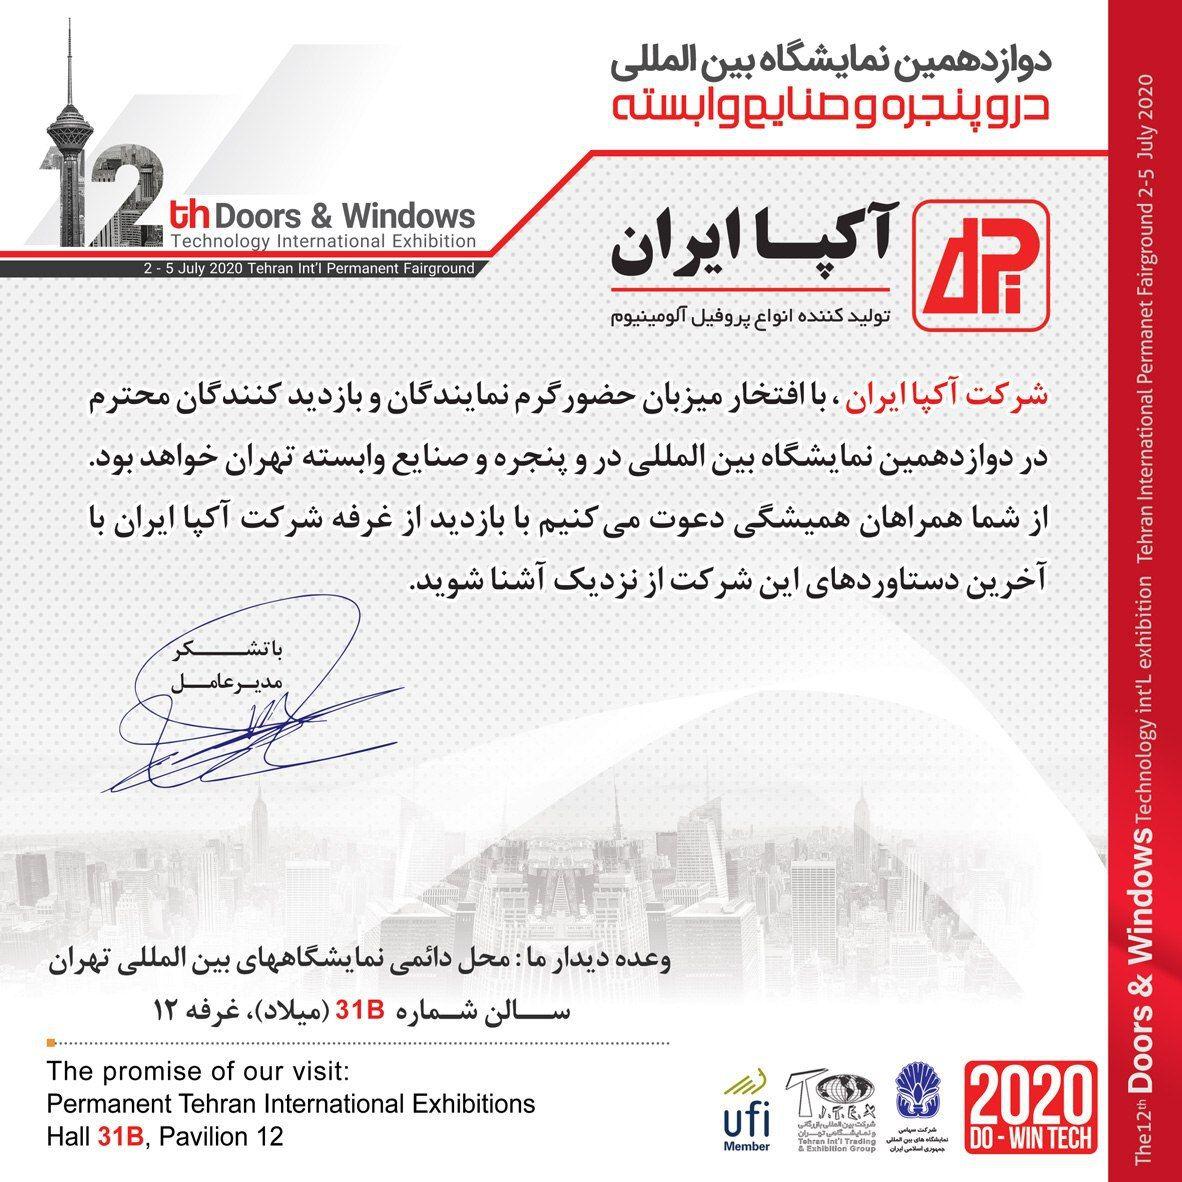 حضور شرکت آکپا در دوازدهمین نمایشگاه در و پنجره تهران